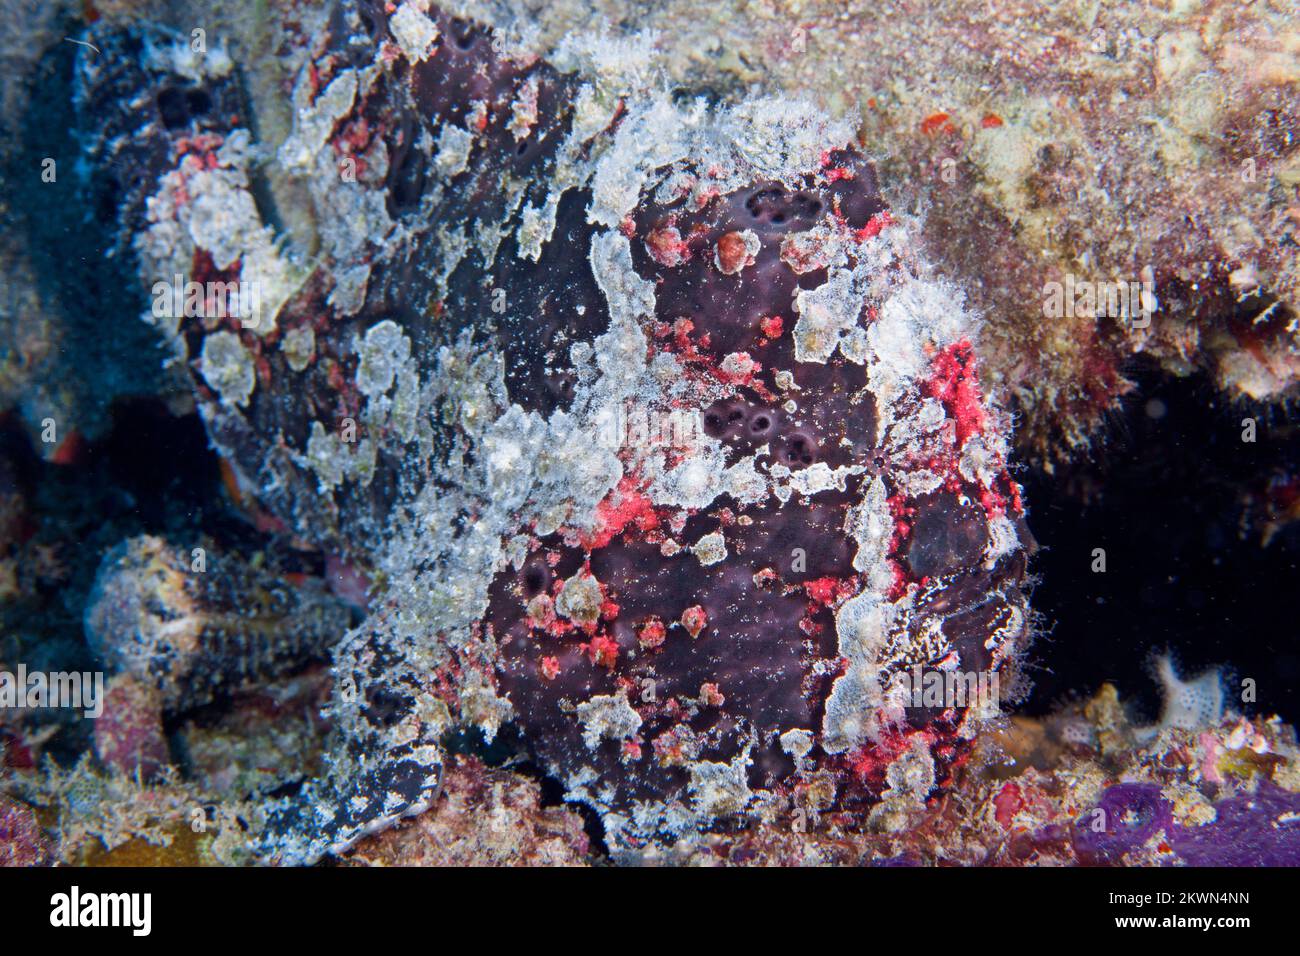 Primer plano sobre el camuflaje de una rape gigante en el arrecife de coral de Borneo - Antennarius commersonAMERA Foto de stock